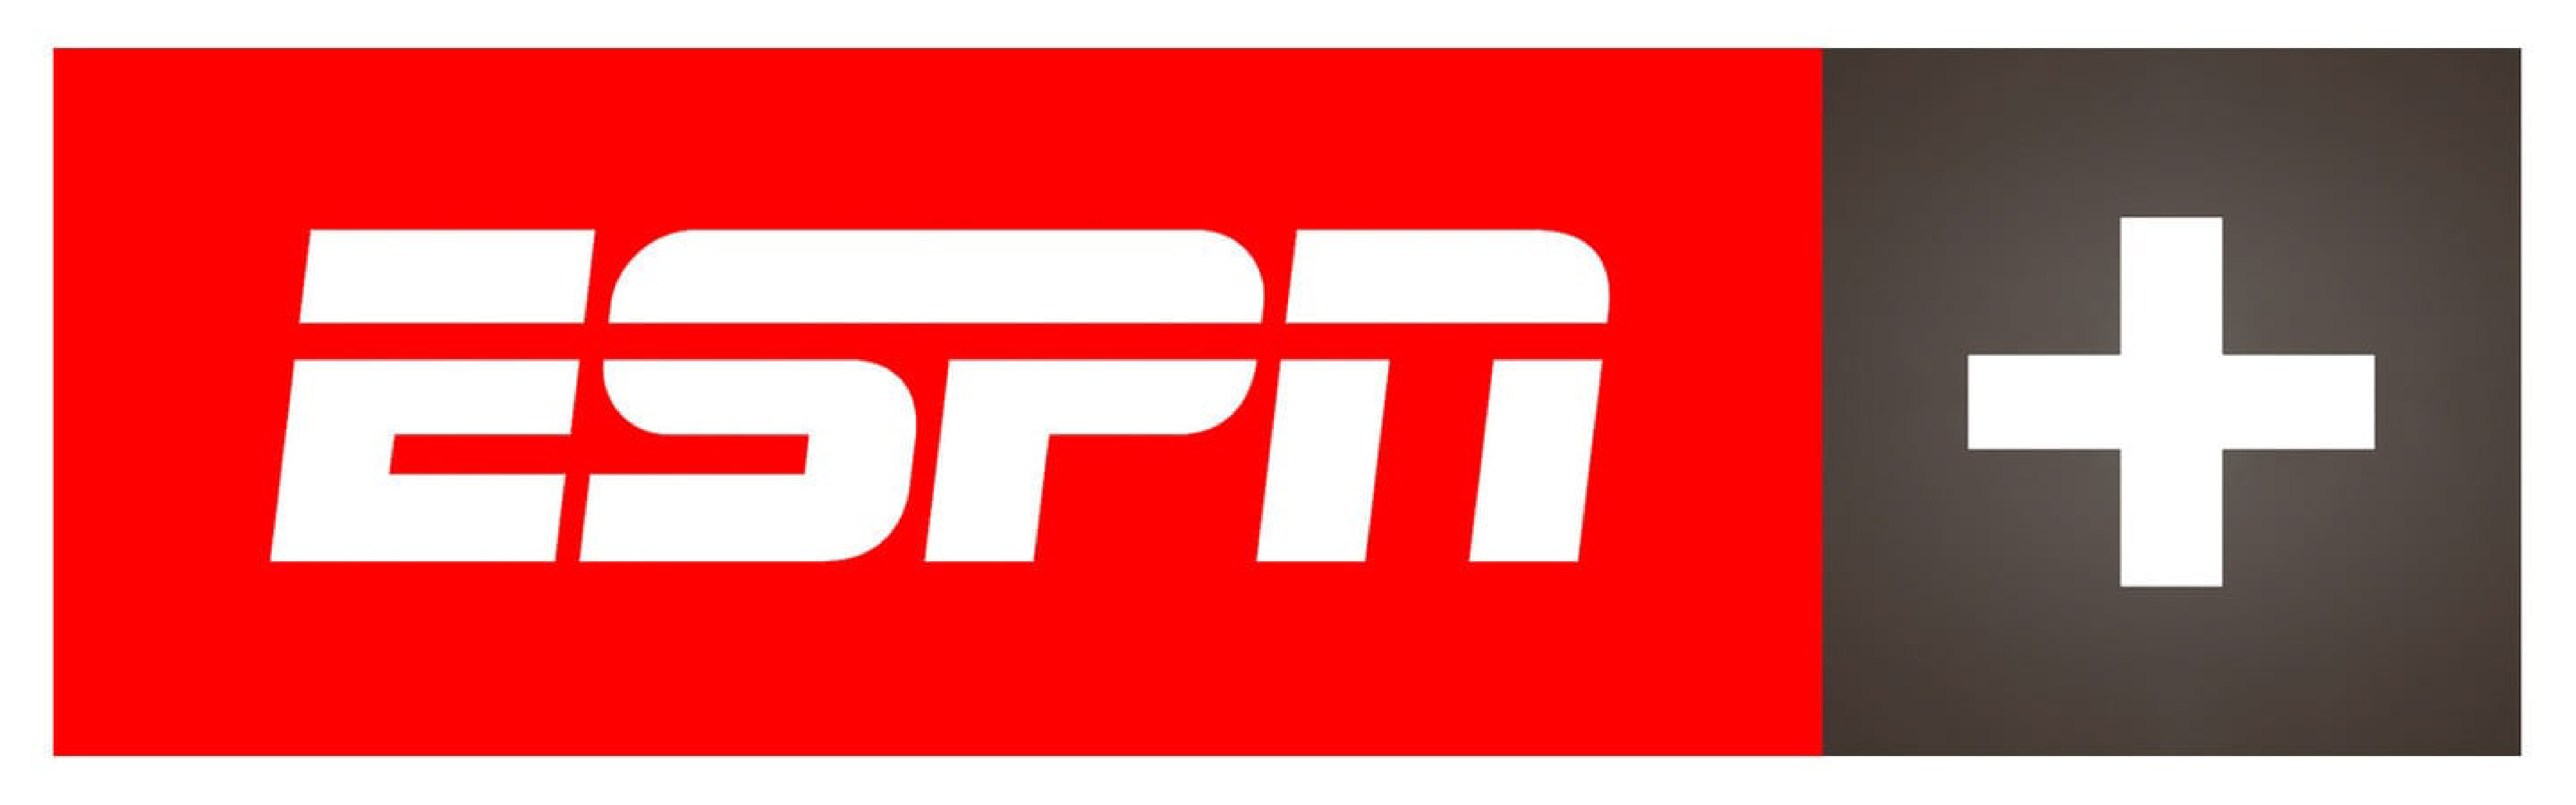 ESPN PLUS SPORTS SCHEDULE